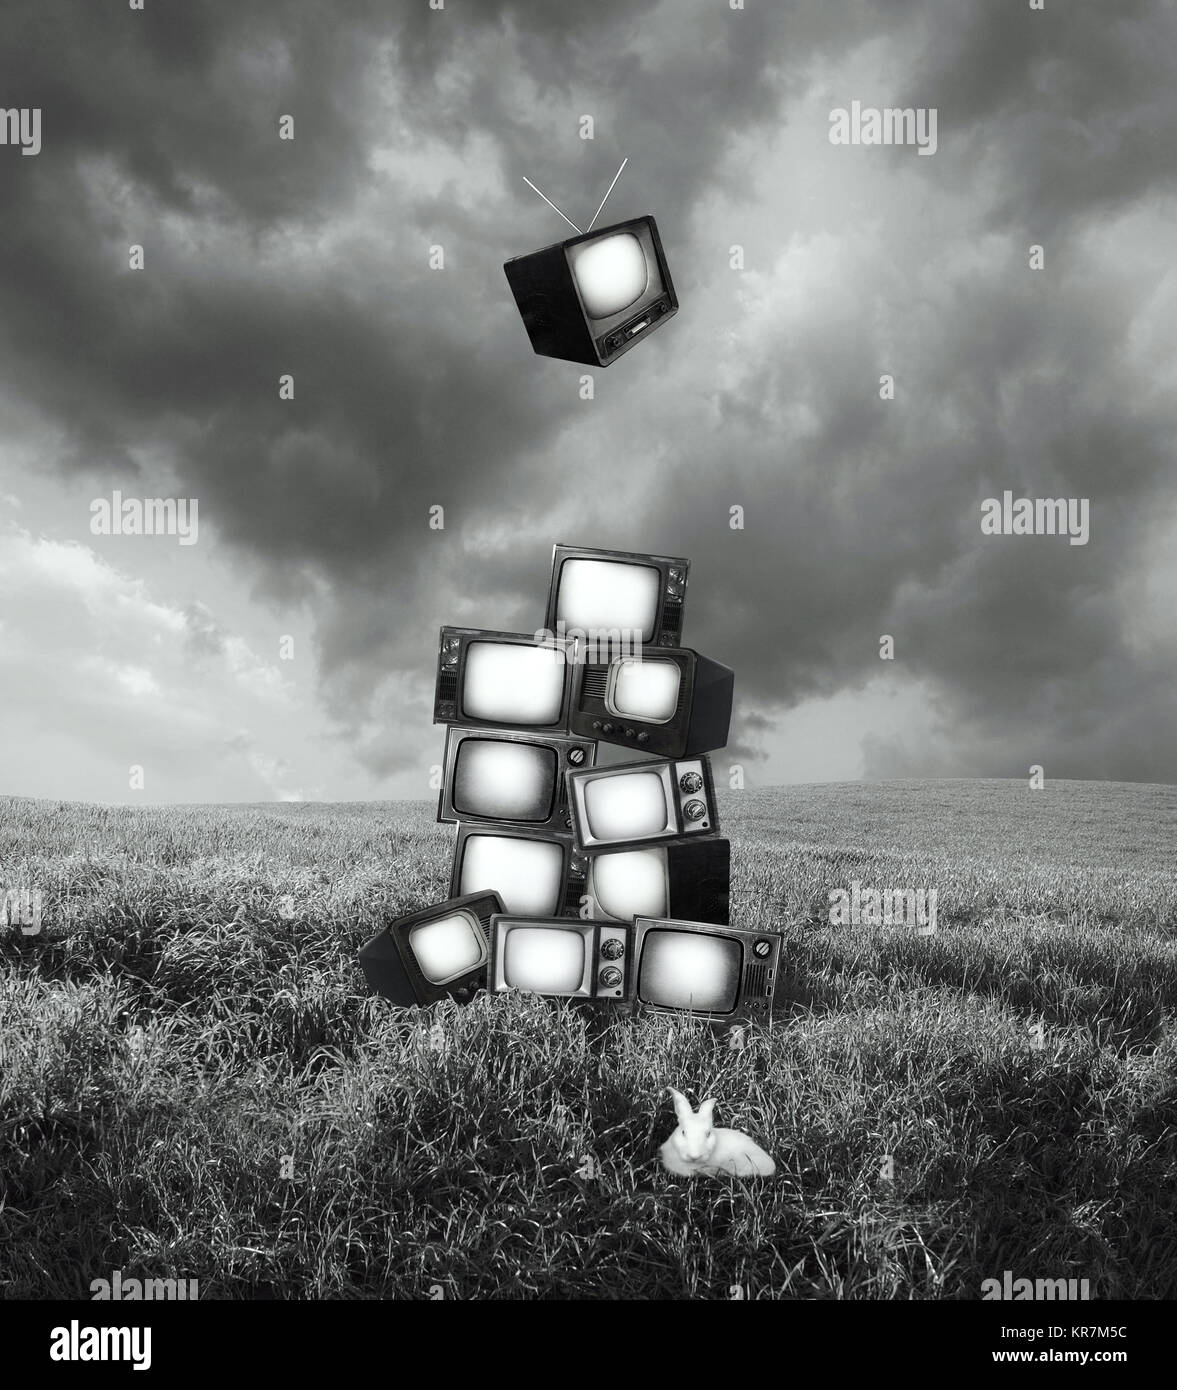 Schöne künstlerische surreales Bild, das eine Landschaft mit aufgetürmt alten Fernsehern und einem weißen Kaninchen in Schwarz und Weiß Stockfoto